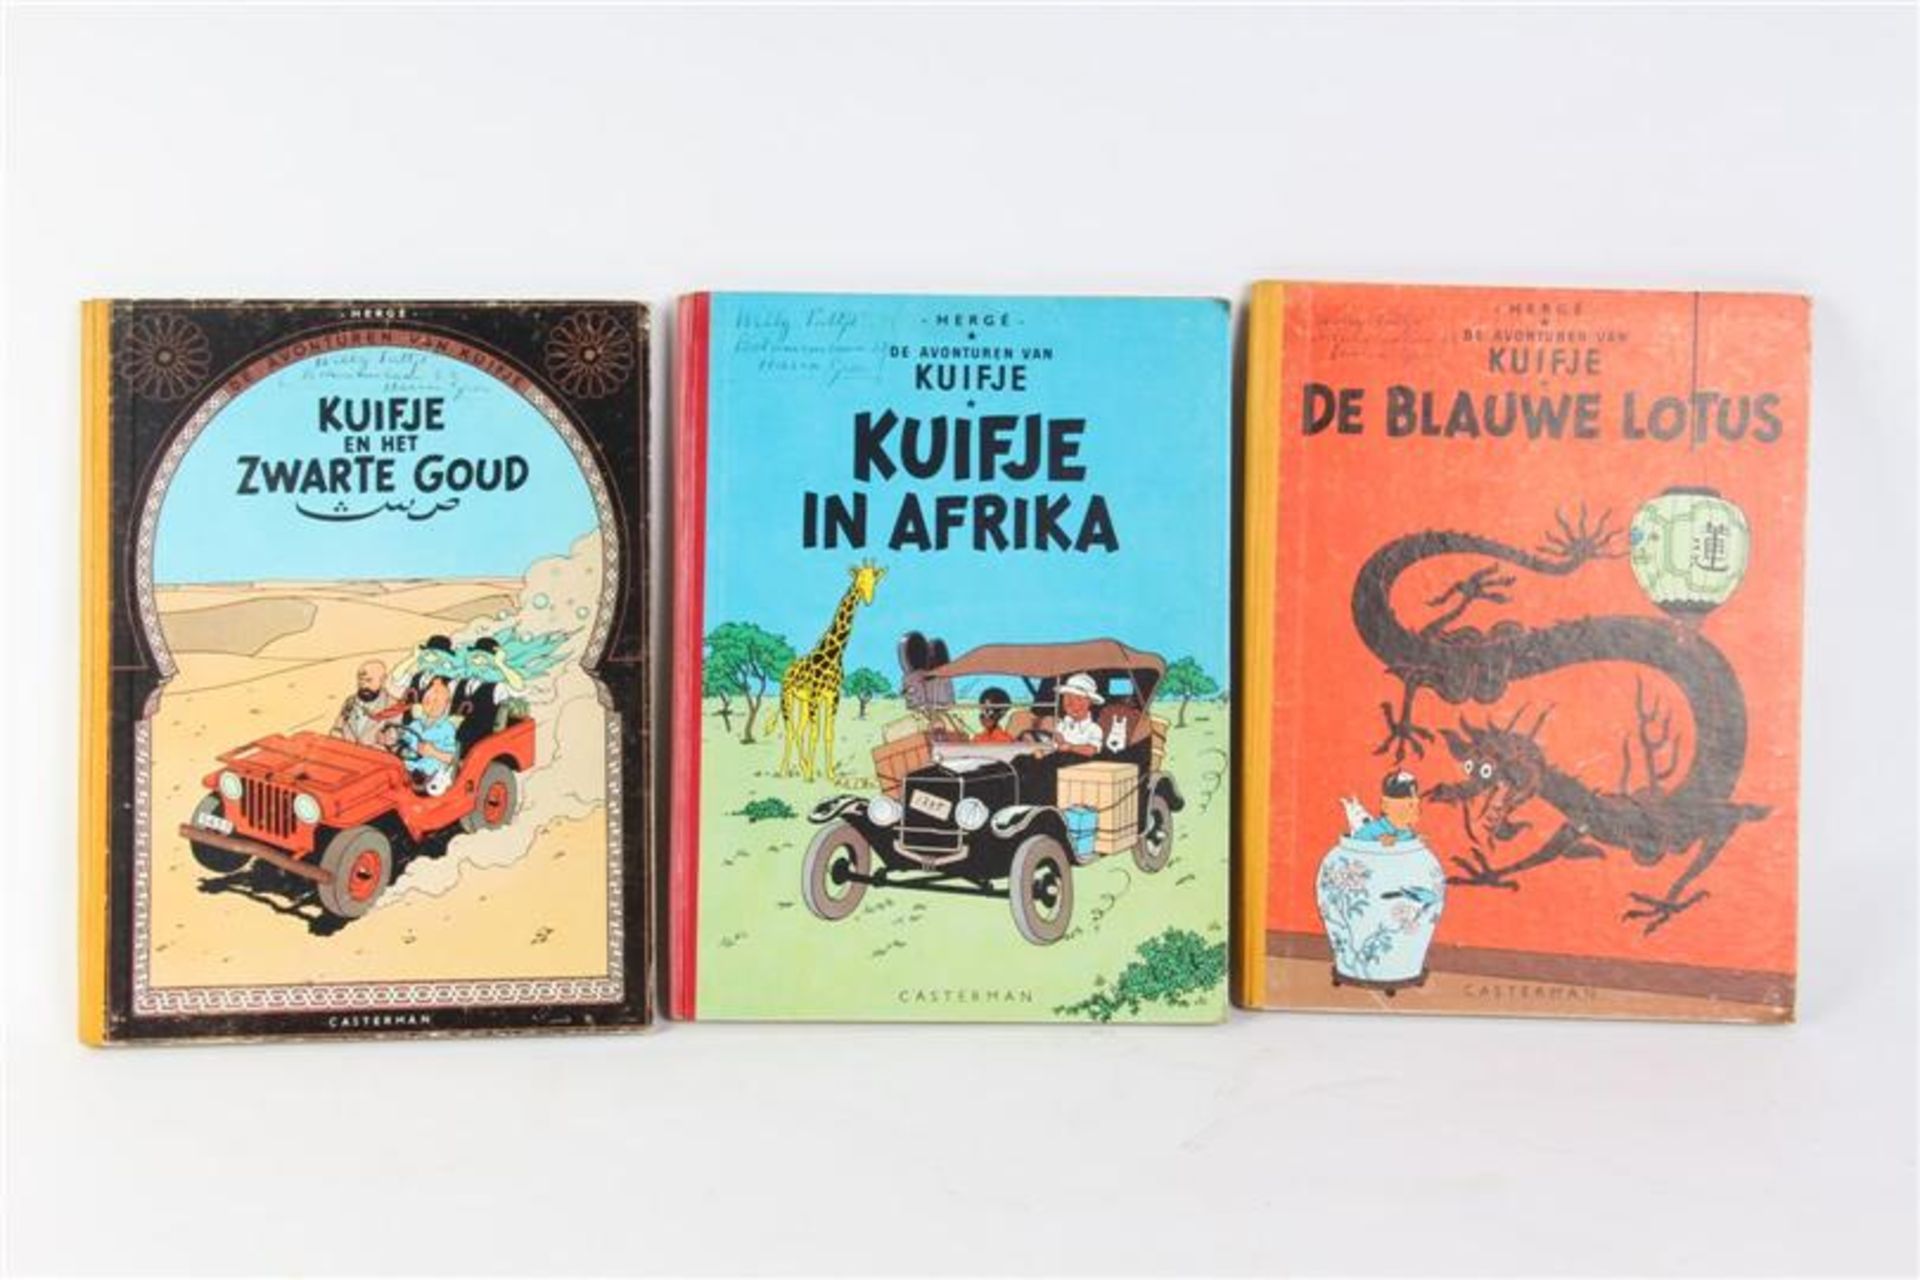 De avonturen van Kuifje, Hergé, uitgeverij Casterman, 7 hardcovers en drie softcovers. - Bild 16 aus 17